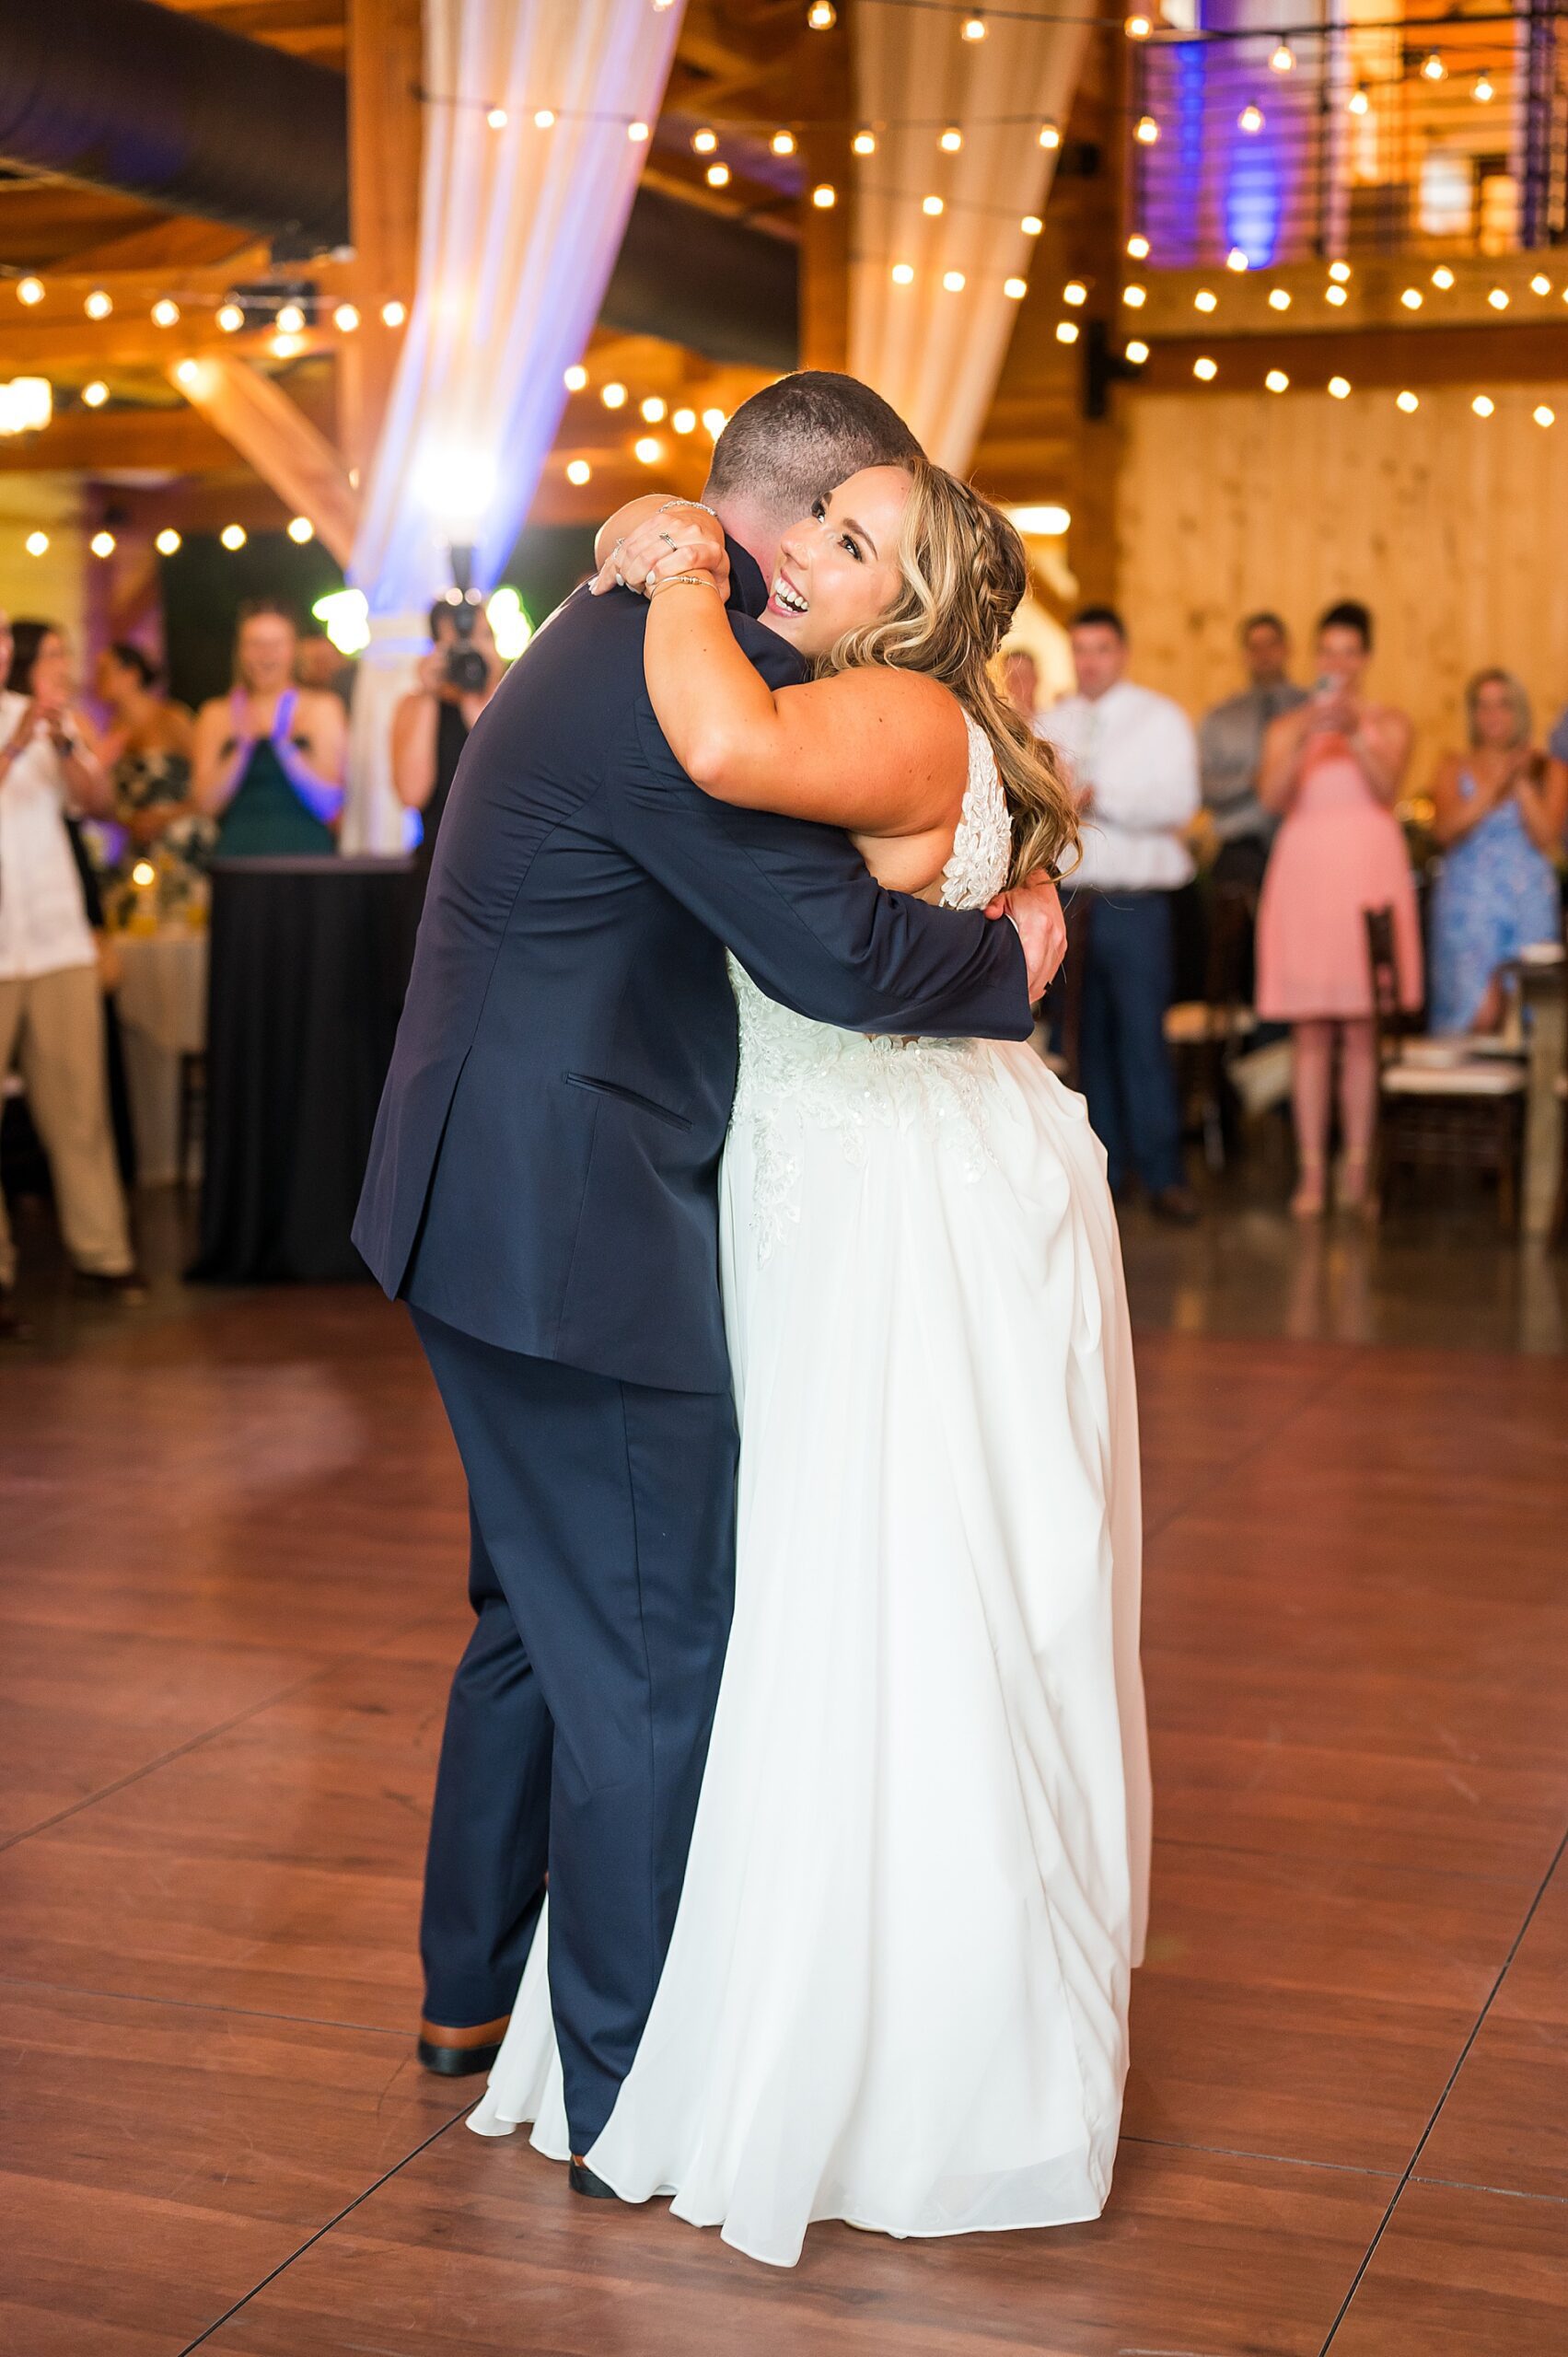 newlyweds hug on the dance floor